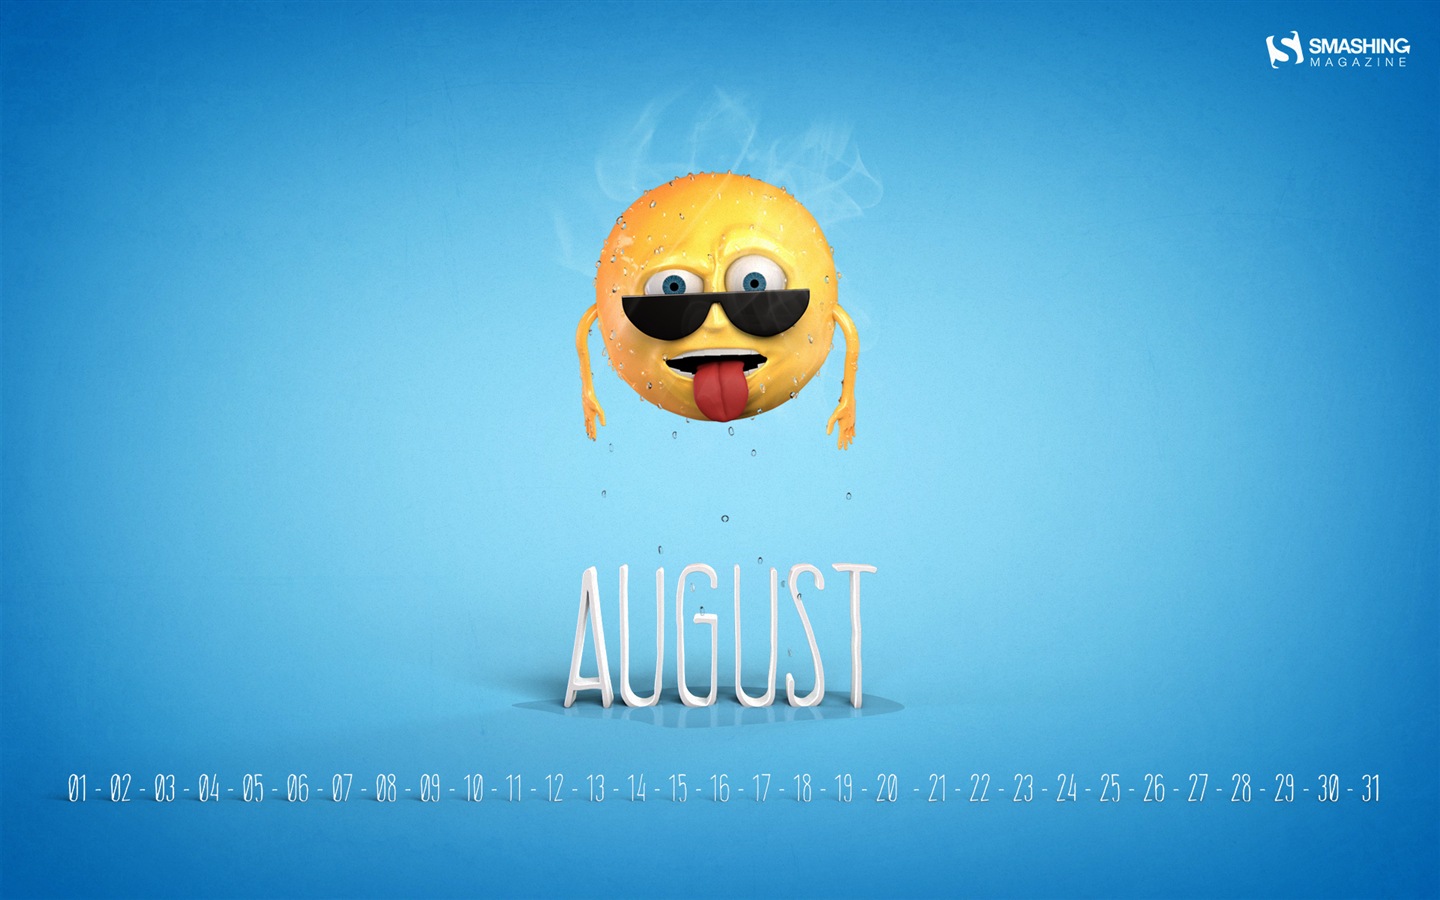 August 2014 calendar wallpaper (2) #11 - 1440x900